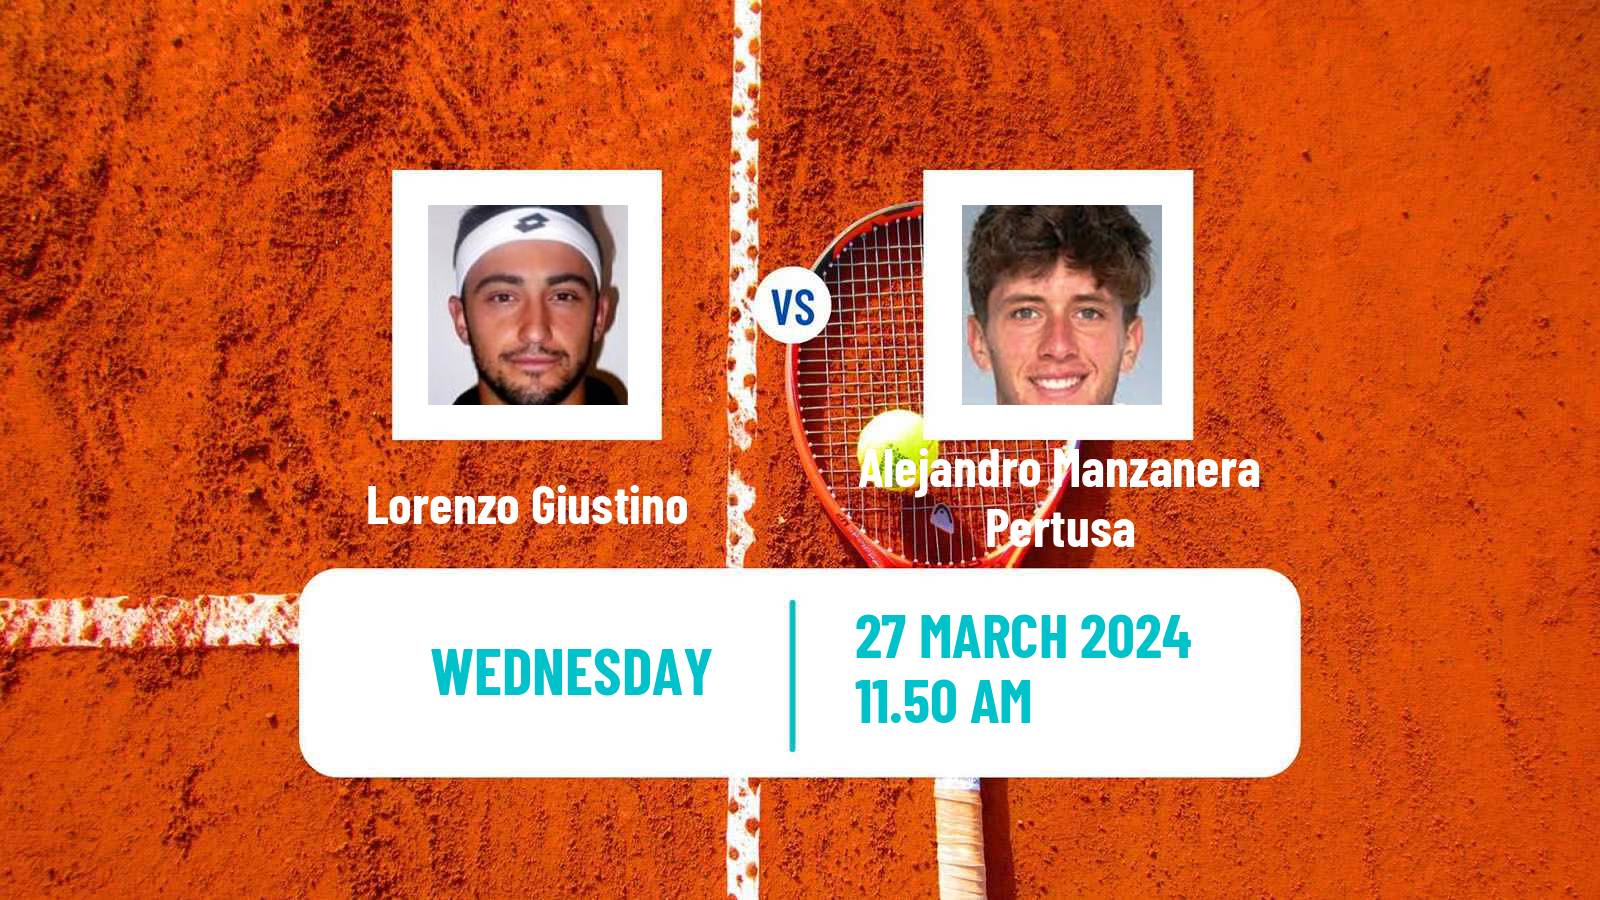 Tennis ITF M25 Tarragona Men Lorenzo Giustino - Alejandro Manzanera Pertusa